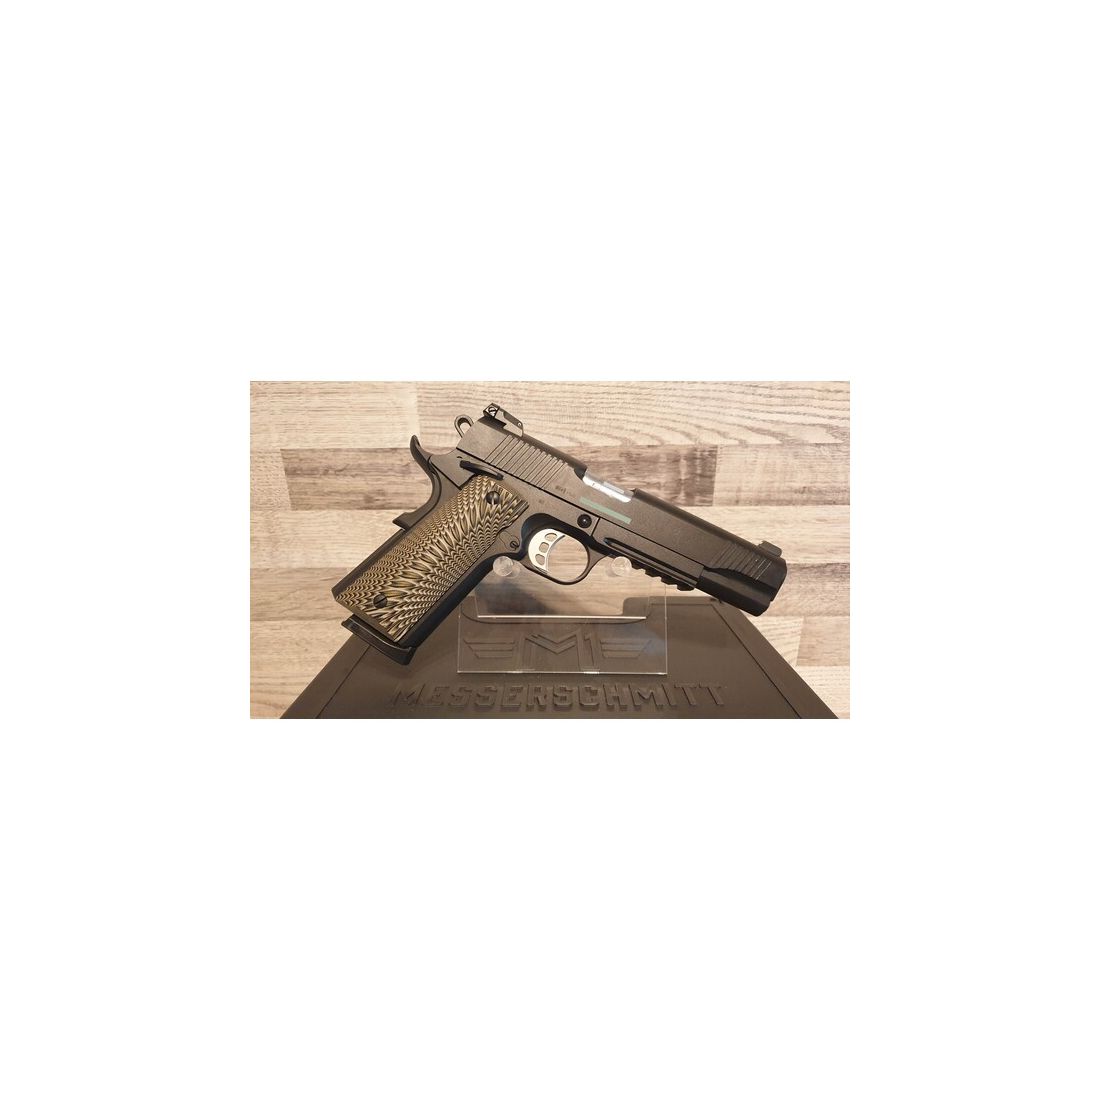 Neuware vom Fachhandel - Pistole Messerschmitt ME 1911 Black Kal. .45ACP + Koffer und 2 Magazine